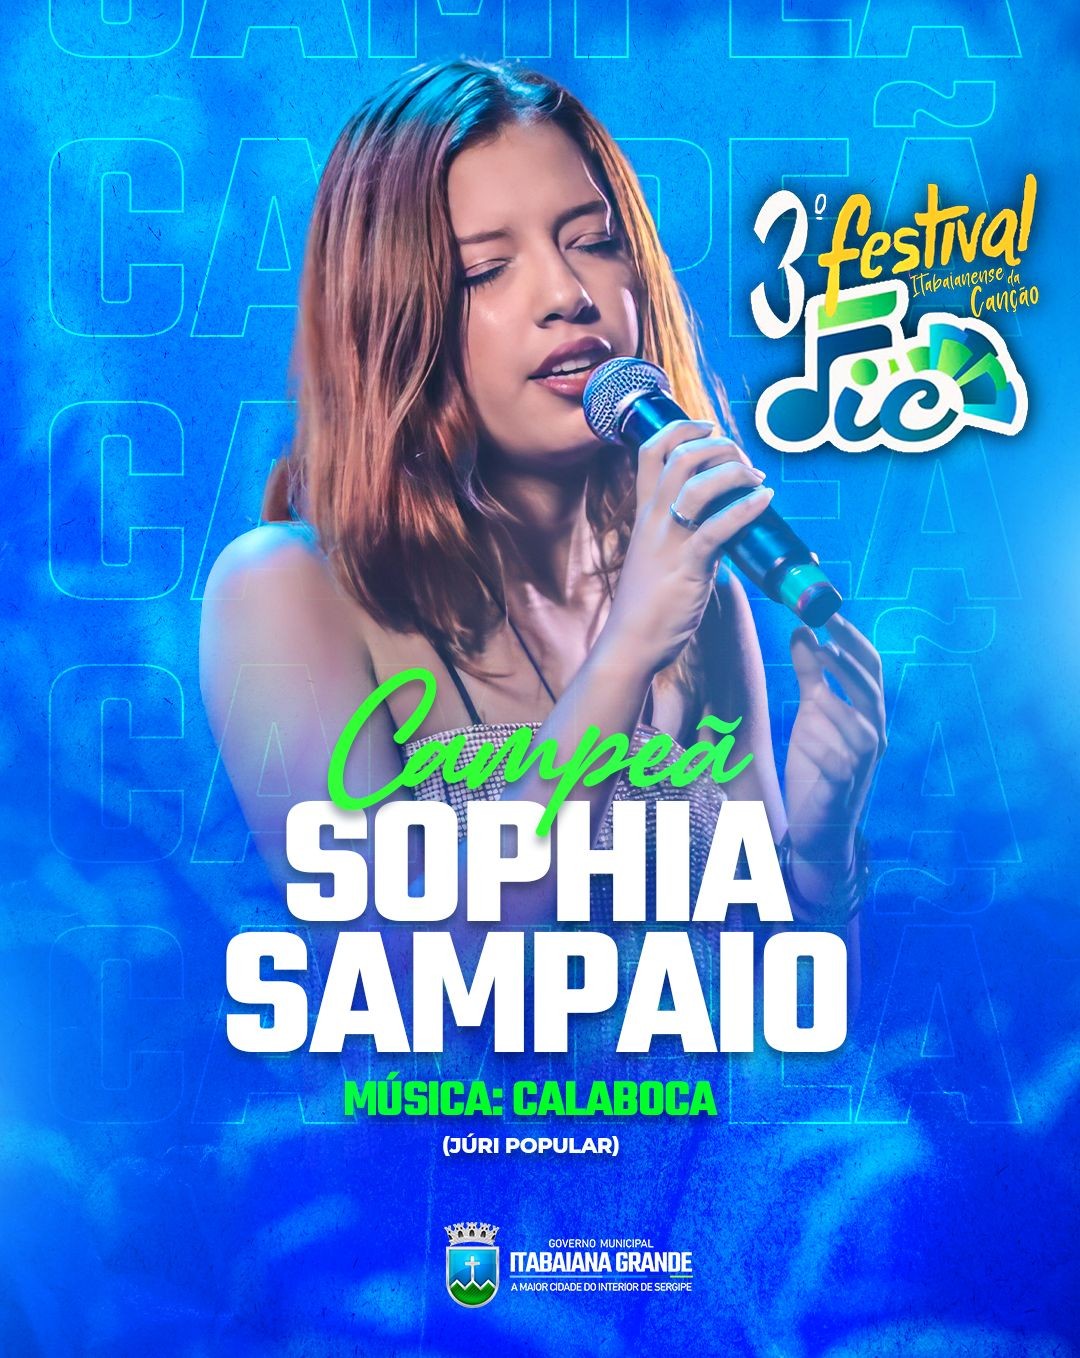 Com 42,46% dos votos, Sophia Sampaio vence o FIC na categoria Júri Popular